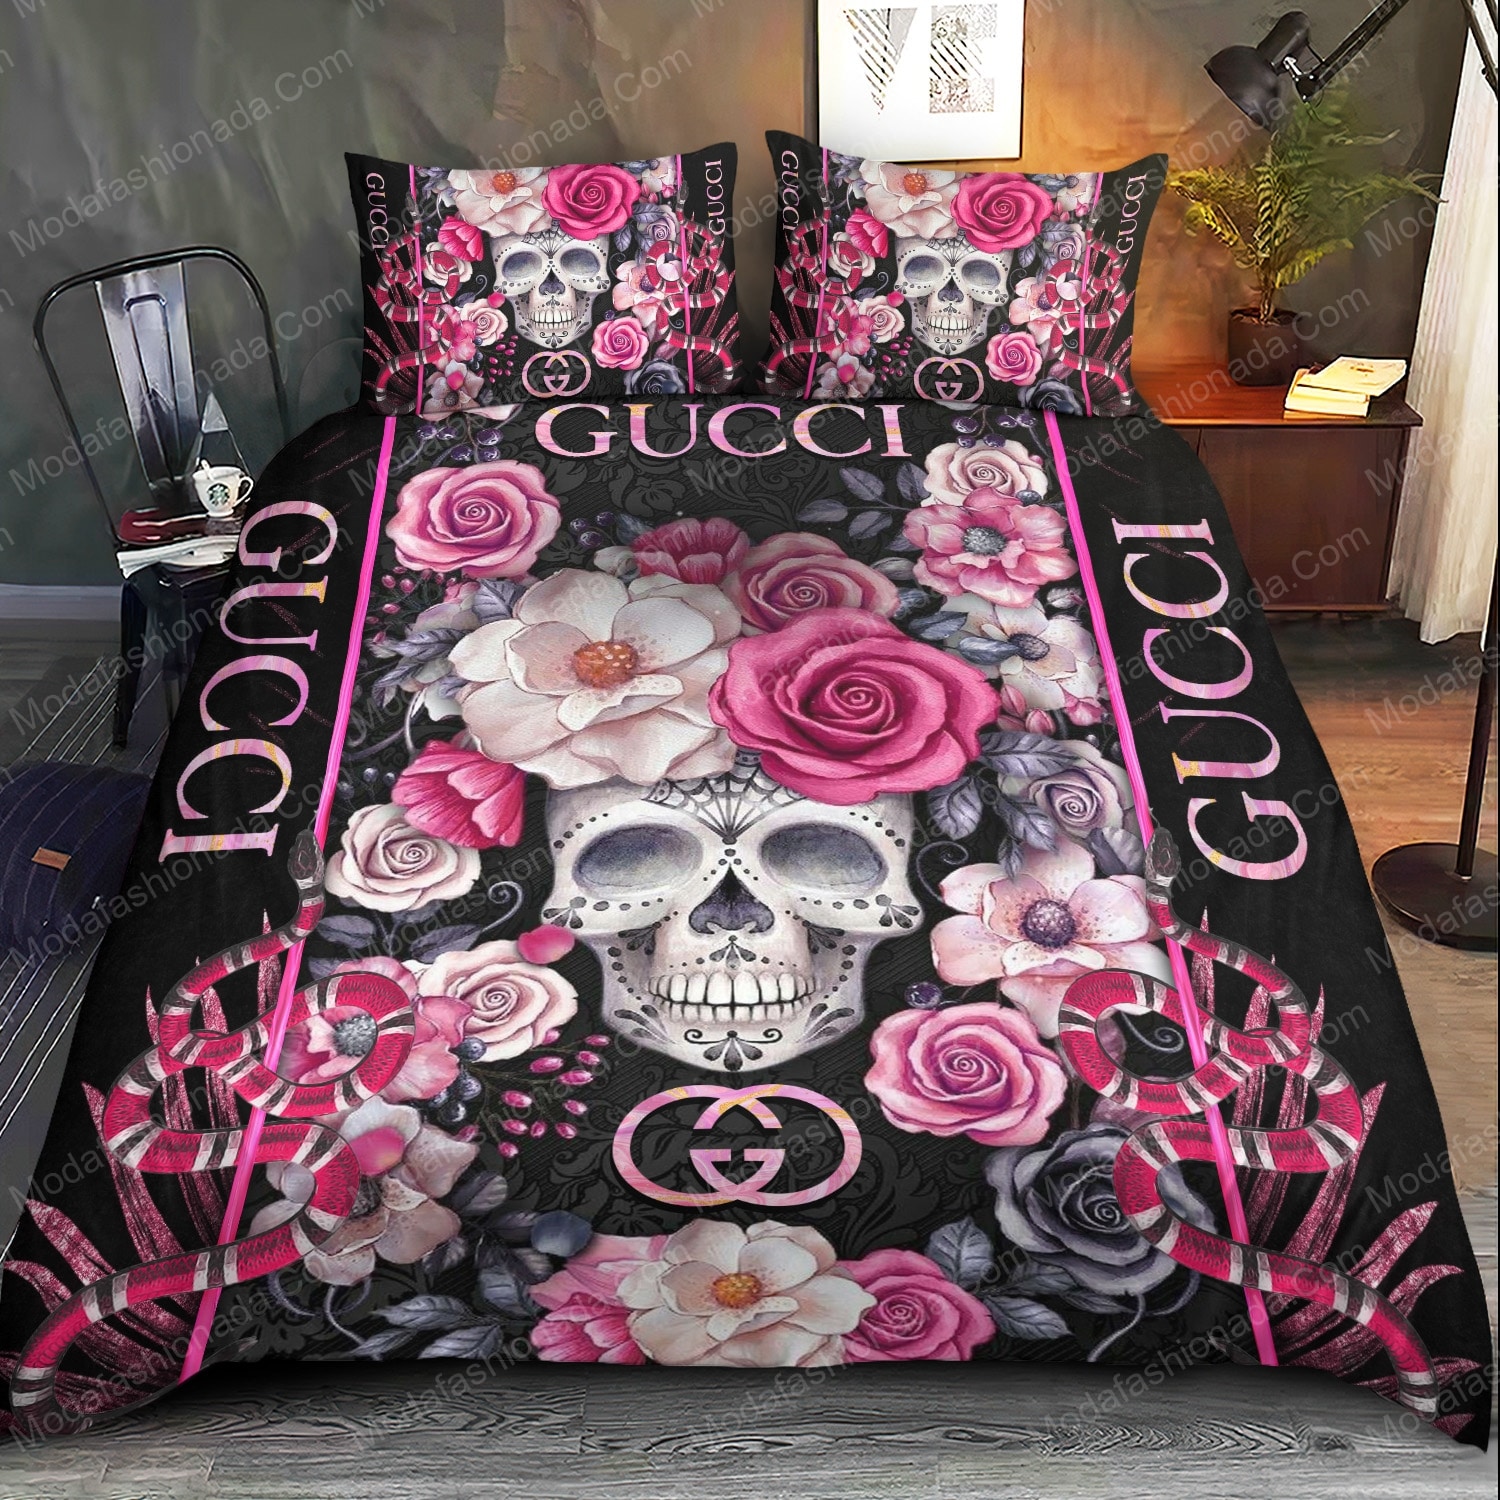 Buy Skull Gucci Bedding Sets Bed Sets, Bedroom Sets, Comforter Sets, Duvet  Cover, Bedspread